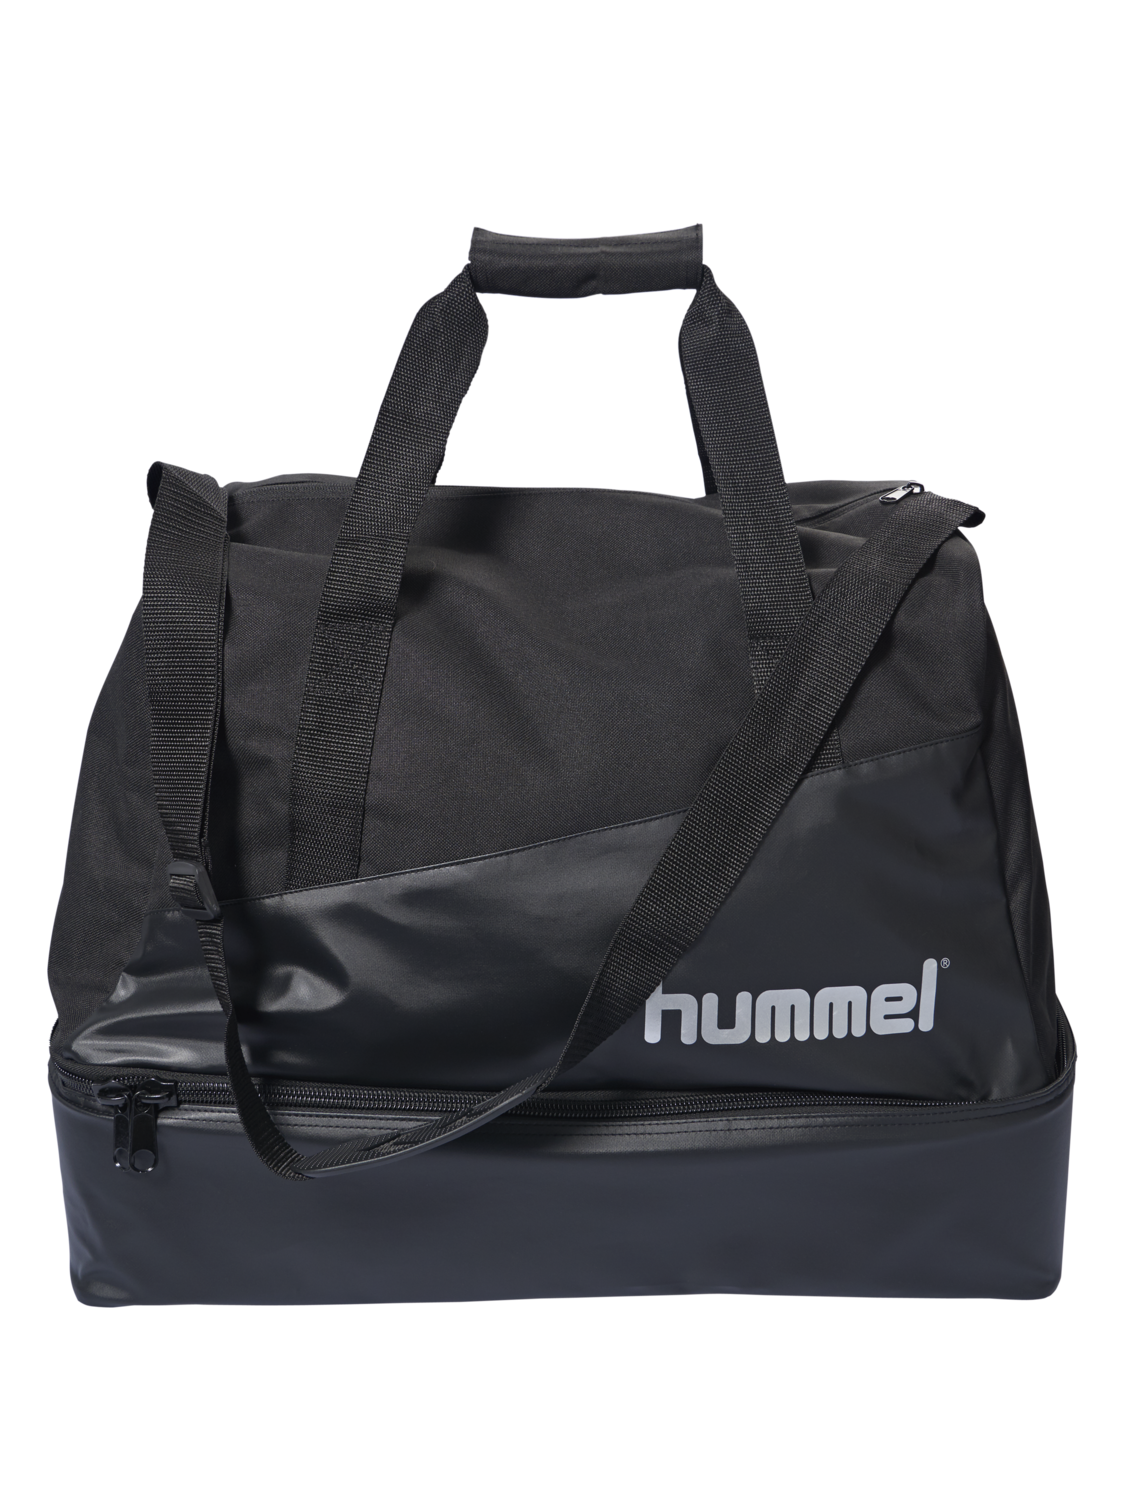 Hummel Authentic Charge Soccer Bag Tasche Fußballtasche Gym blau 200911 7045 WOW 